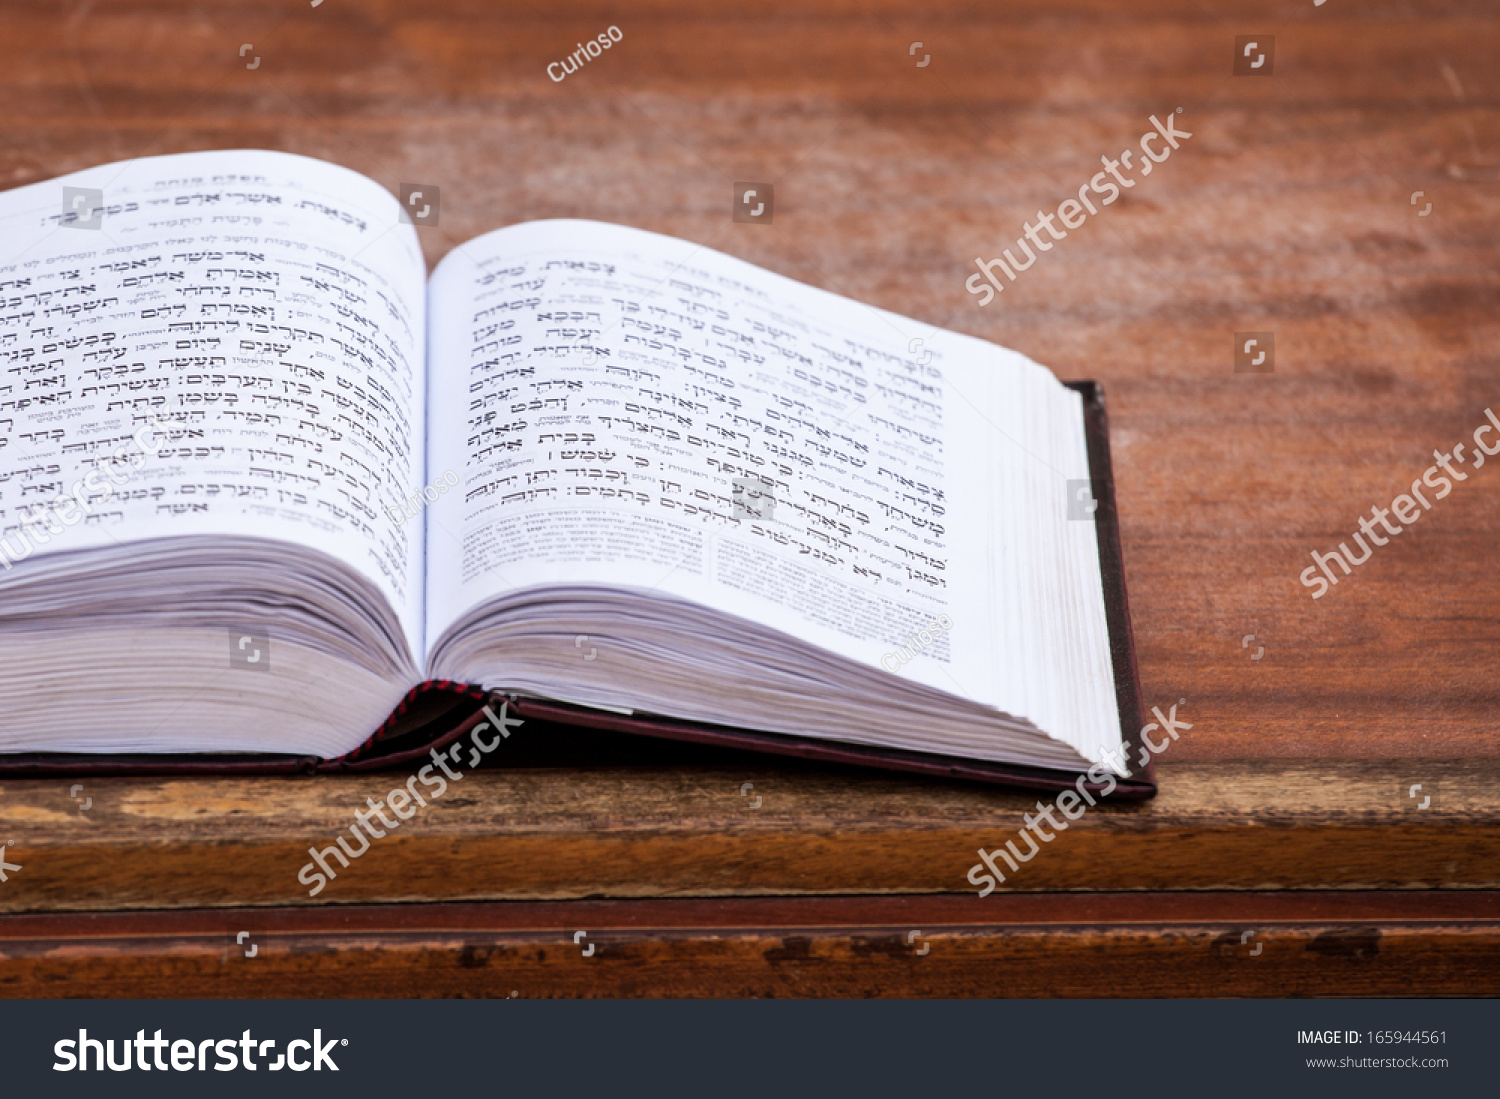 Jewish praying book on table. #165944561